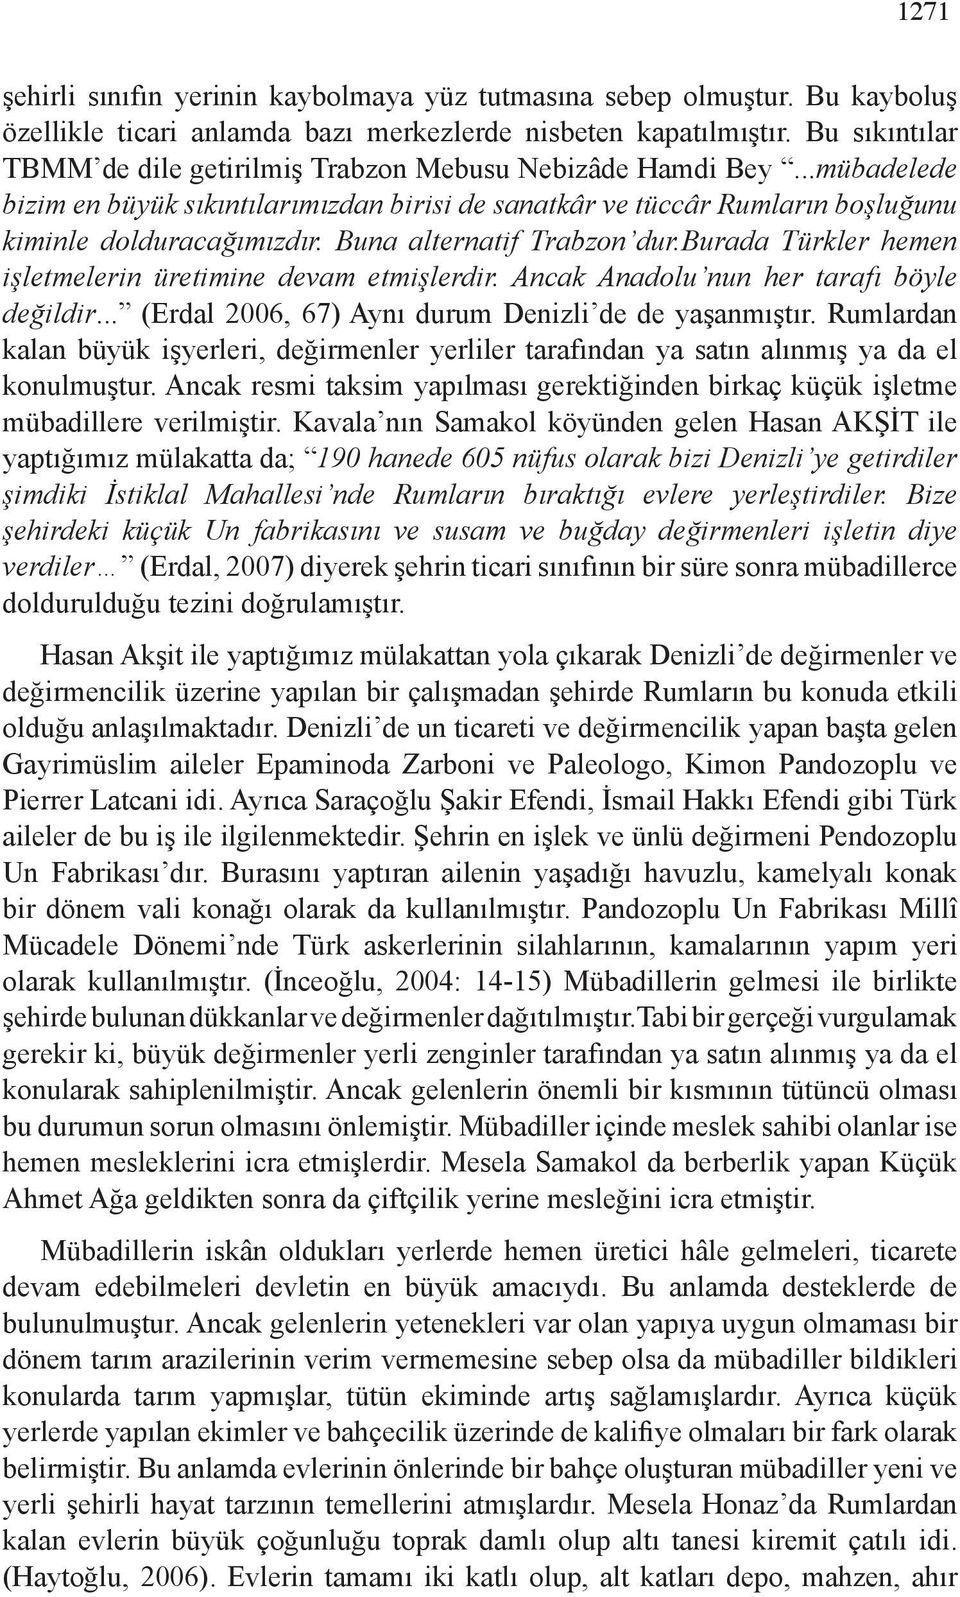 Buna alternatif Trabzon dur.burada Türkler hemen işletmelerin üretimine devam etmişlerdir. Ancak Anadolu nun her tarafı böyle değildir... (Erdal 2006, 67) Aynı durum Denizli de de yaşanmıştır.